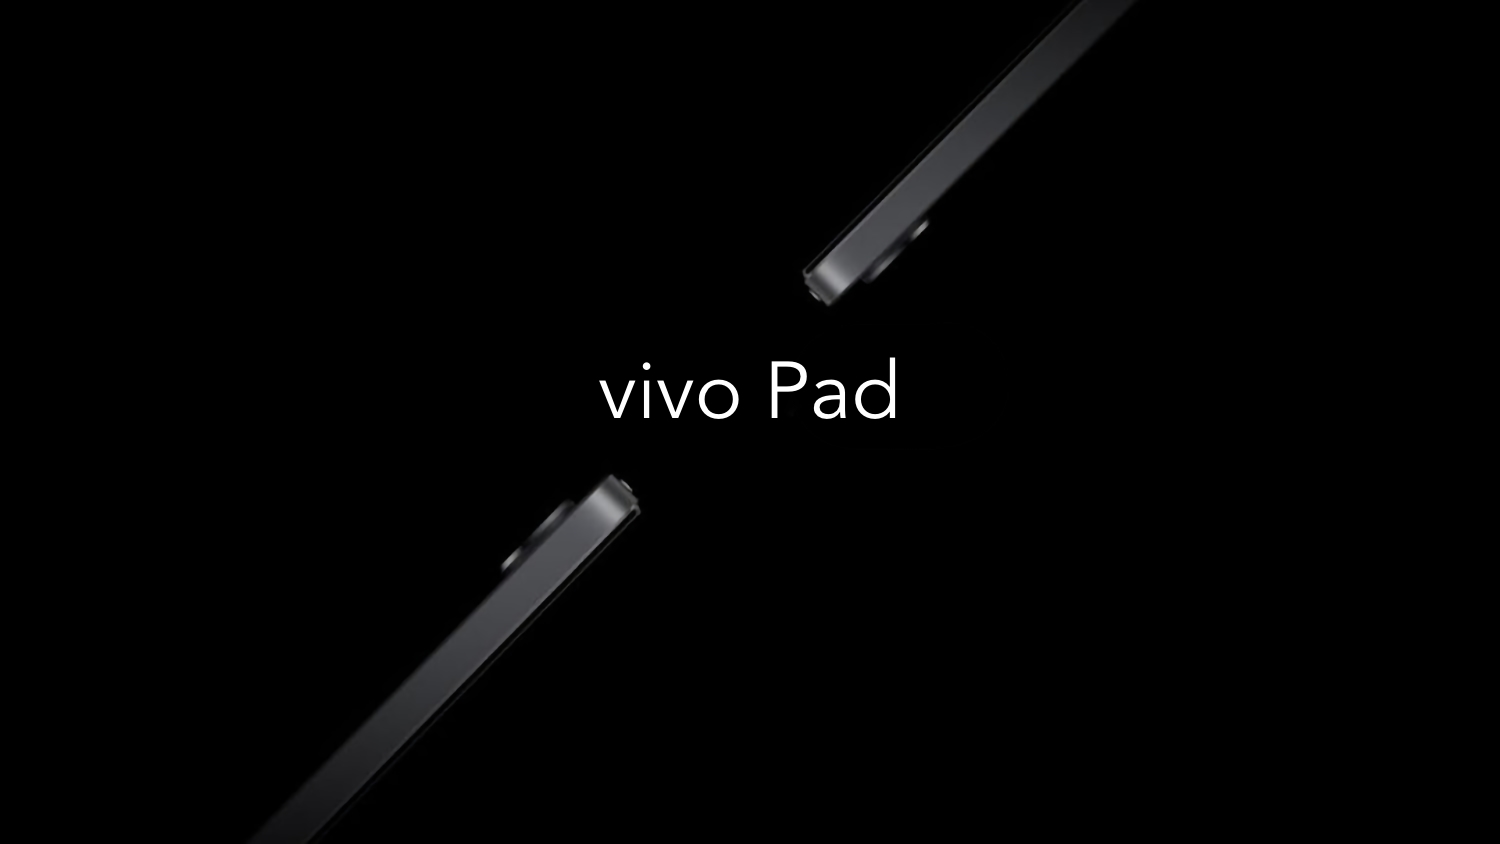 11-calowy ekran 120 Hz, układ Snapdragon 870 i szybkie ładowanie 44 W: znawca podzielił się charakterystyką Vivo Pad